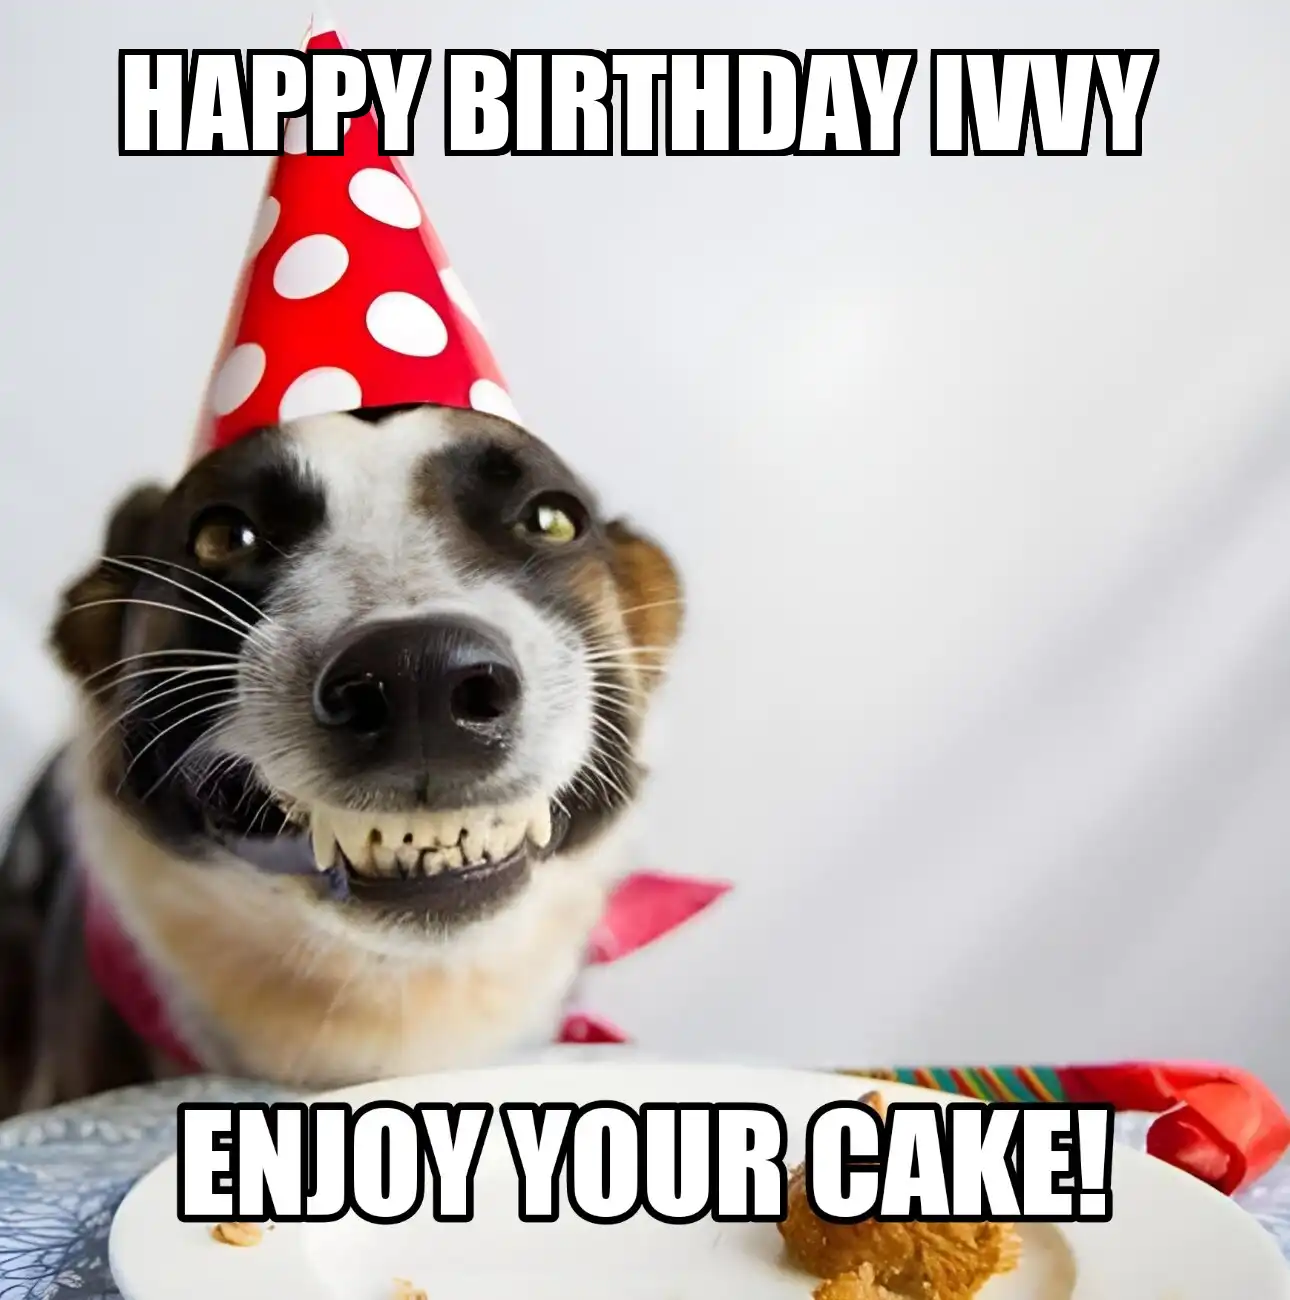 Happy Birthday Ivvy Enjoy Your Cake Dog Meme